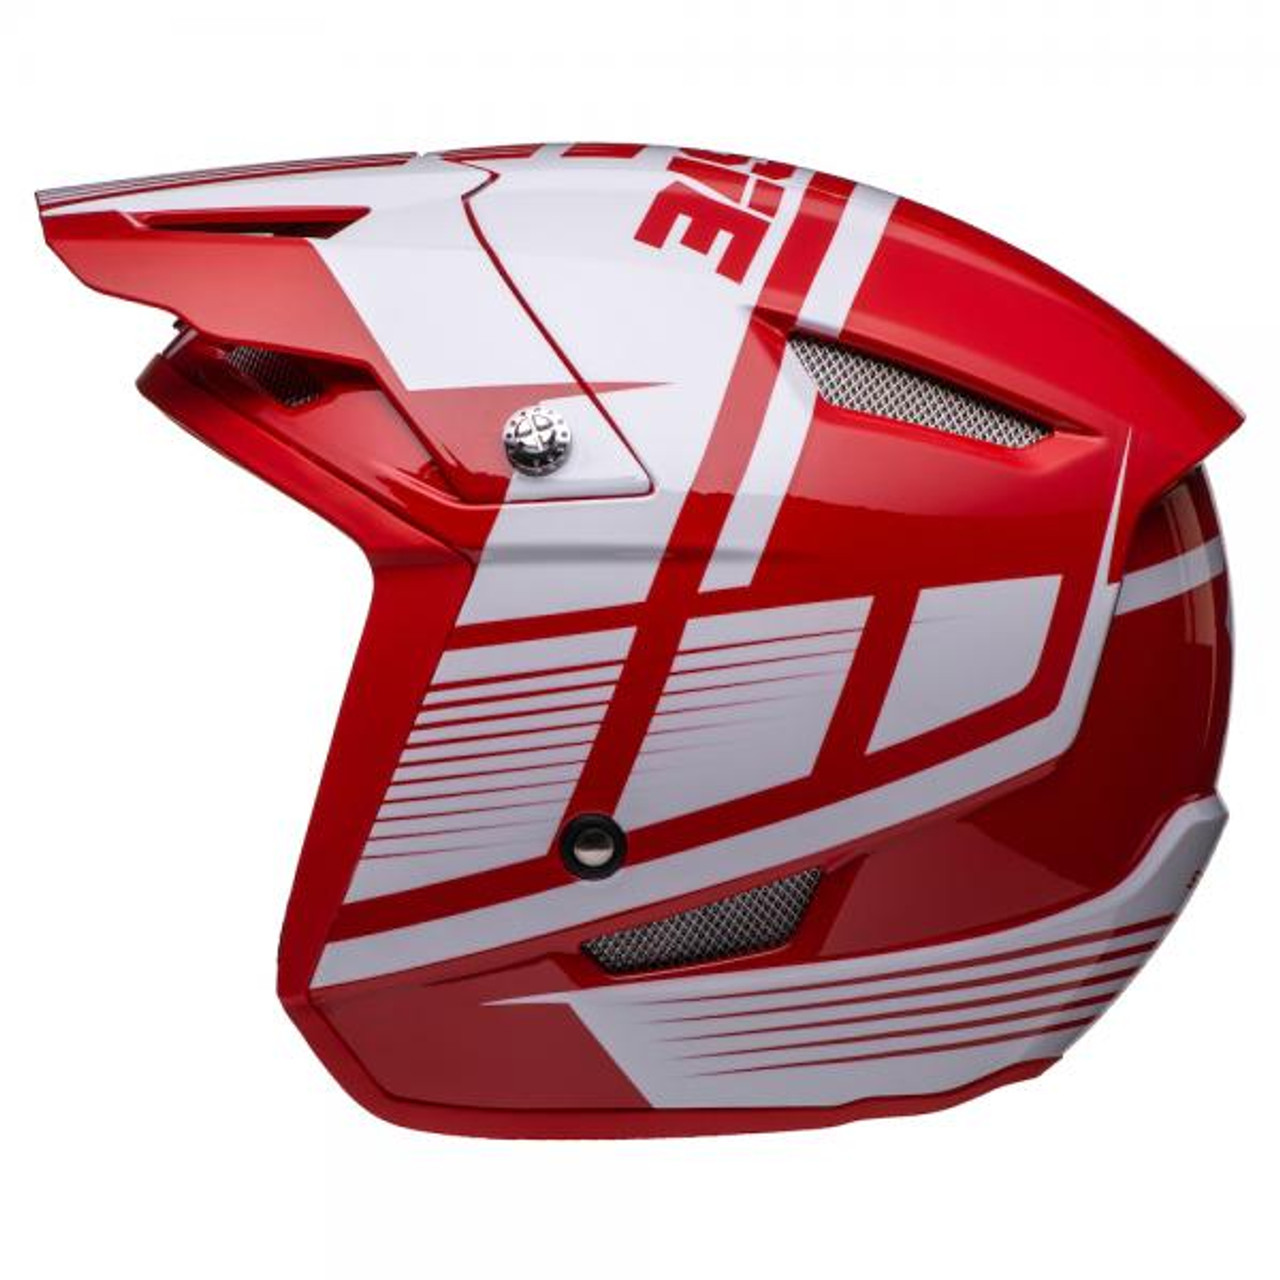 Helmet HT1 Struktur, red/ white